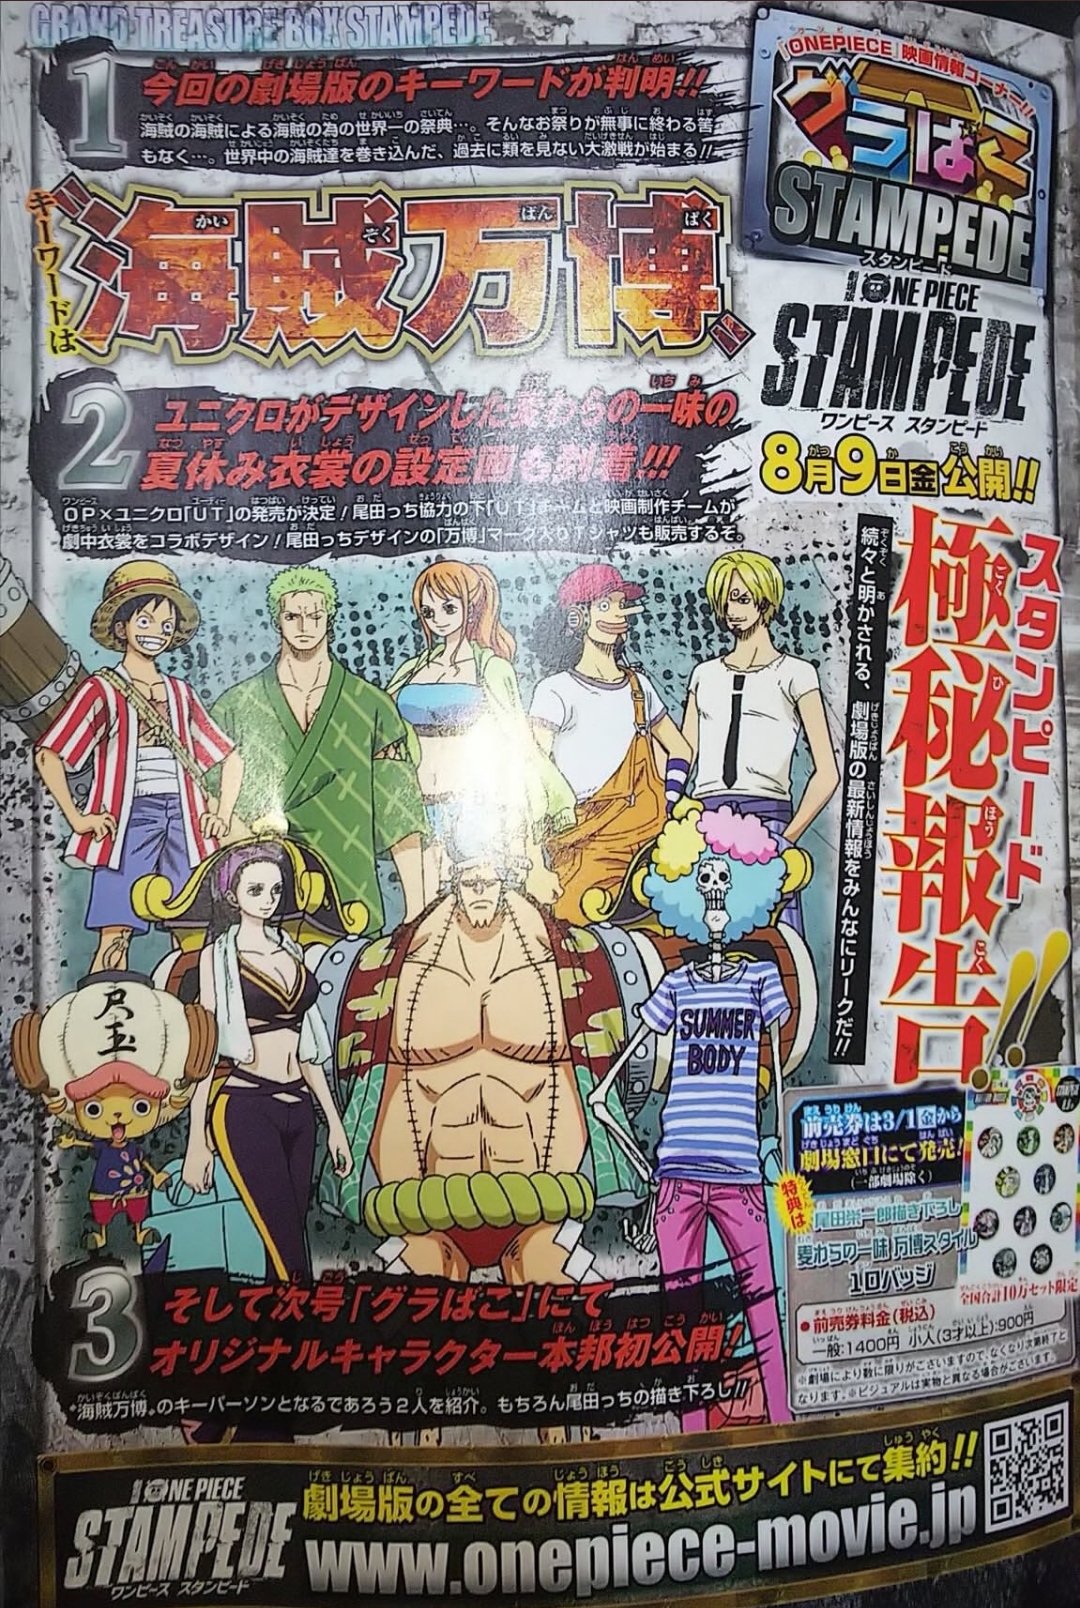 Filmes de One Piece: Gold e Stampede estão dublados no HBO Max